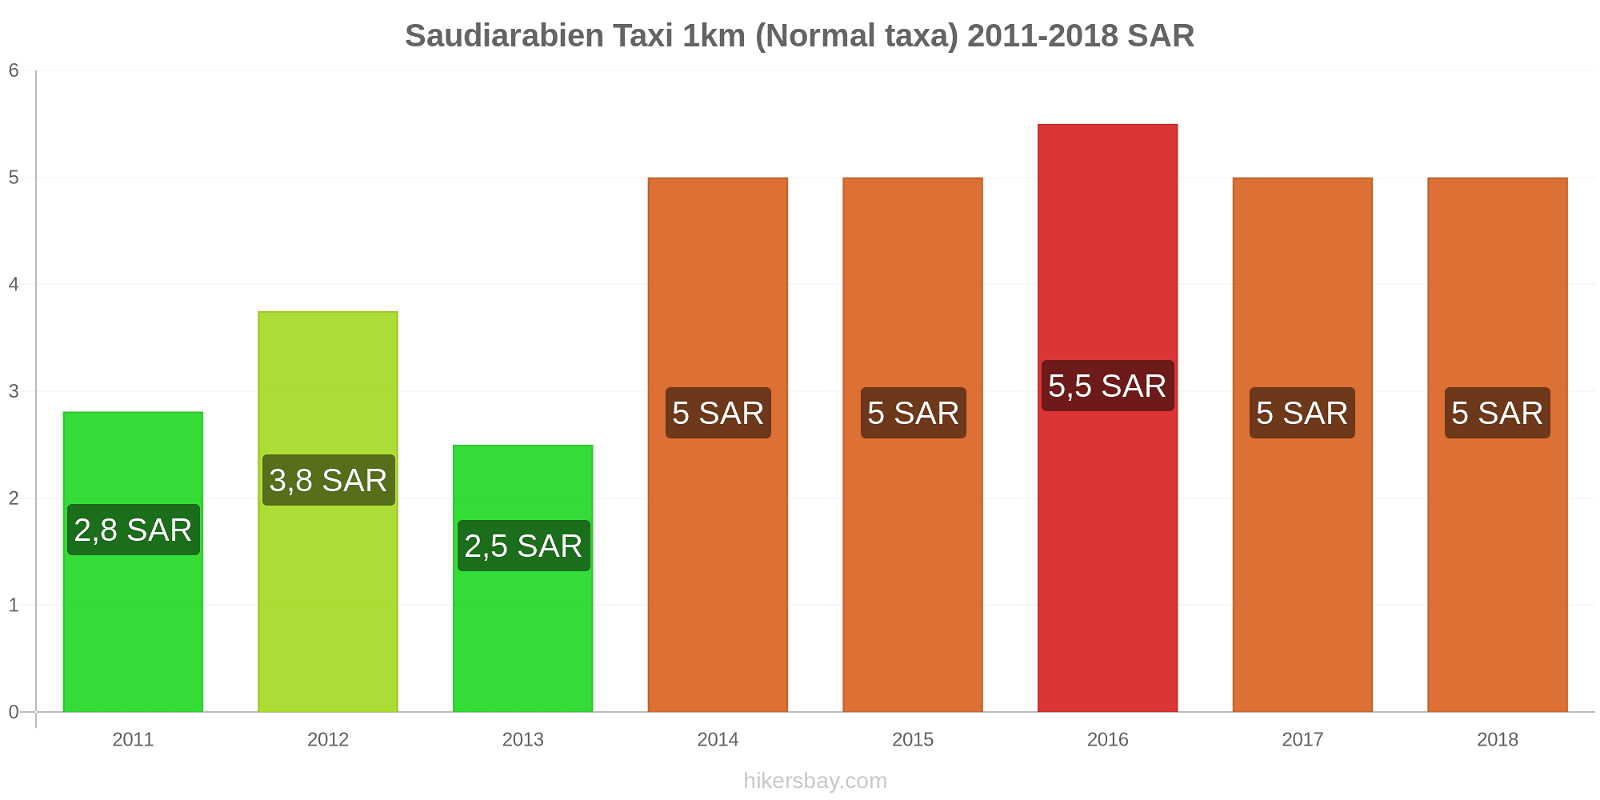 Saudiarabien prisändringar Taxi 1km (Normal taxa) hikersbay.com